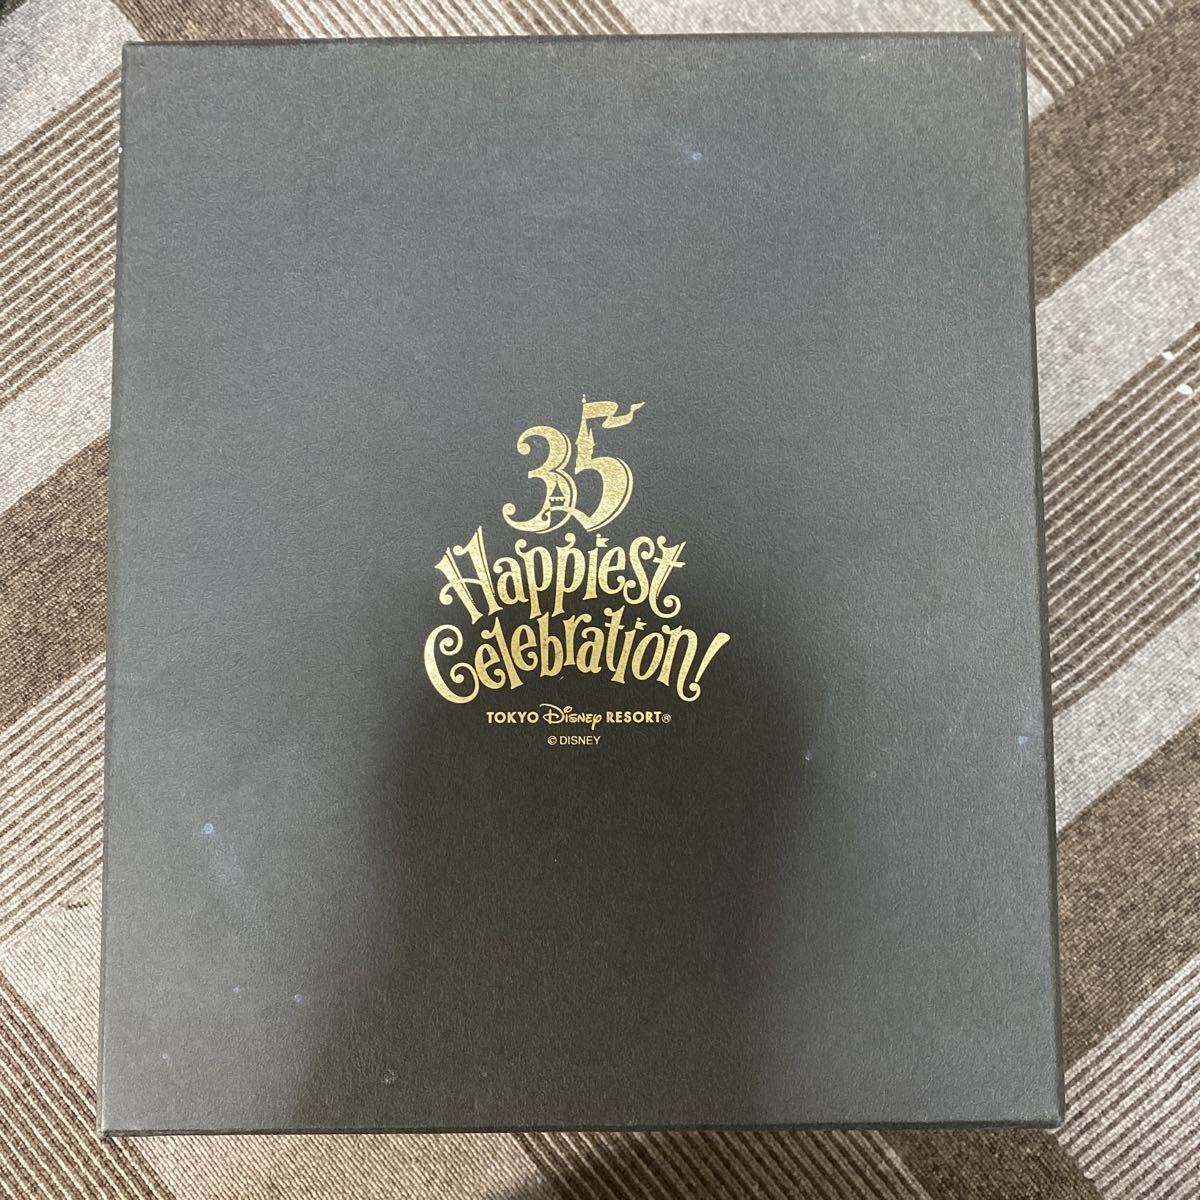 ディズニー35周年happiness celebration限定フィギュア の商品詳細